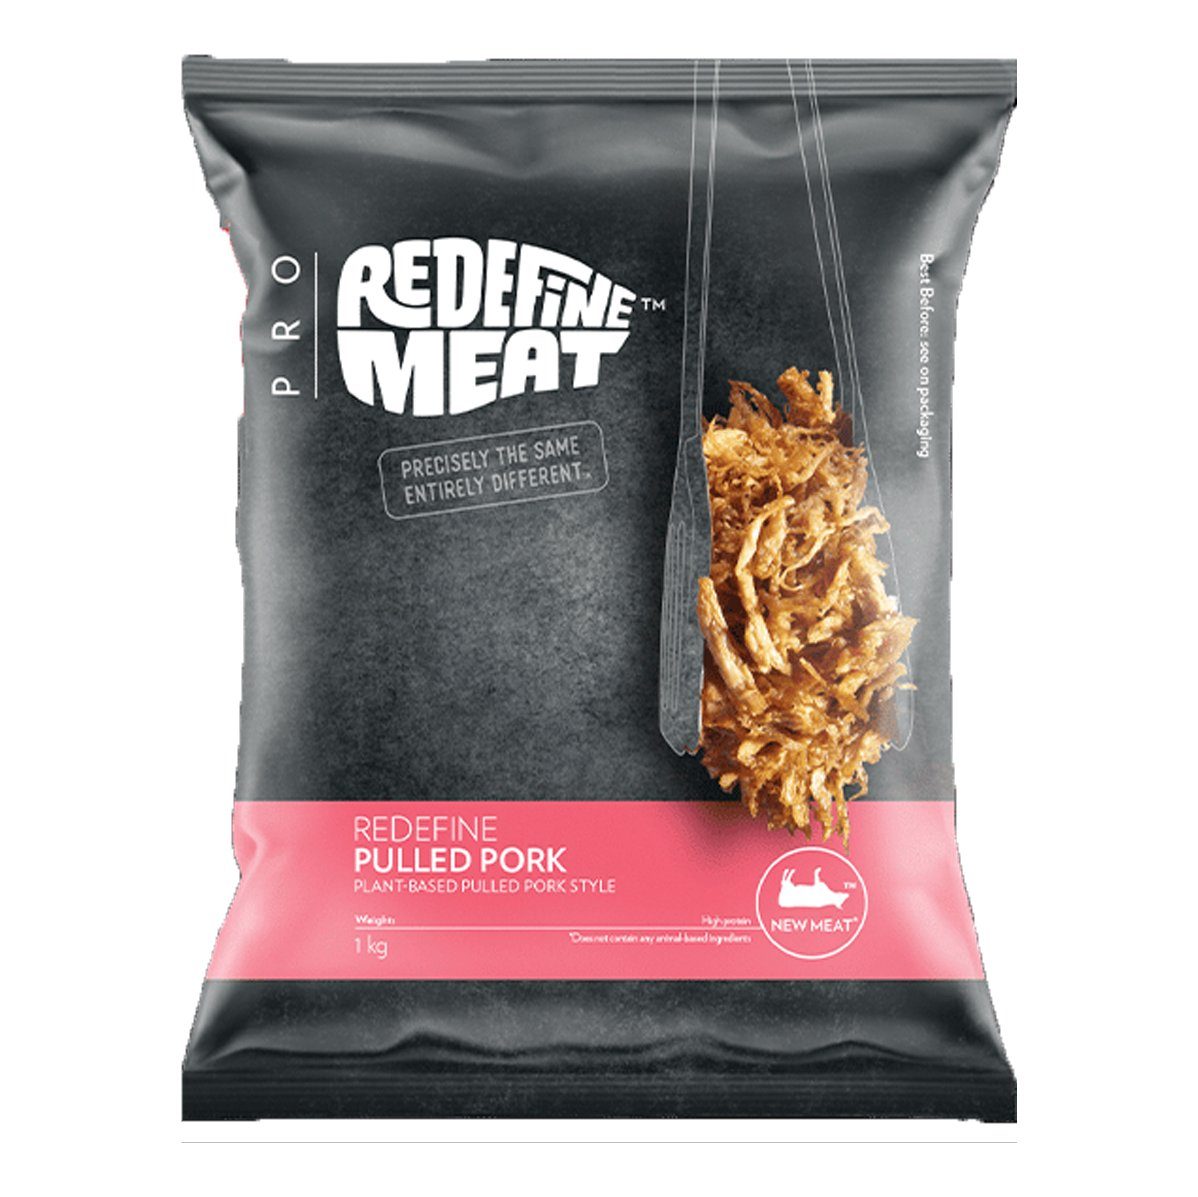 Redefine meat pulled pork